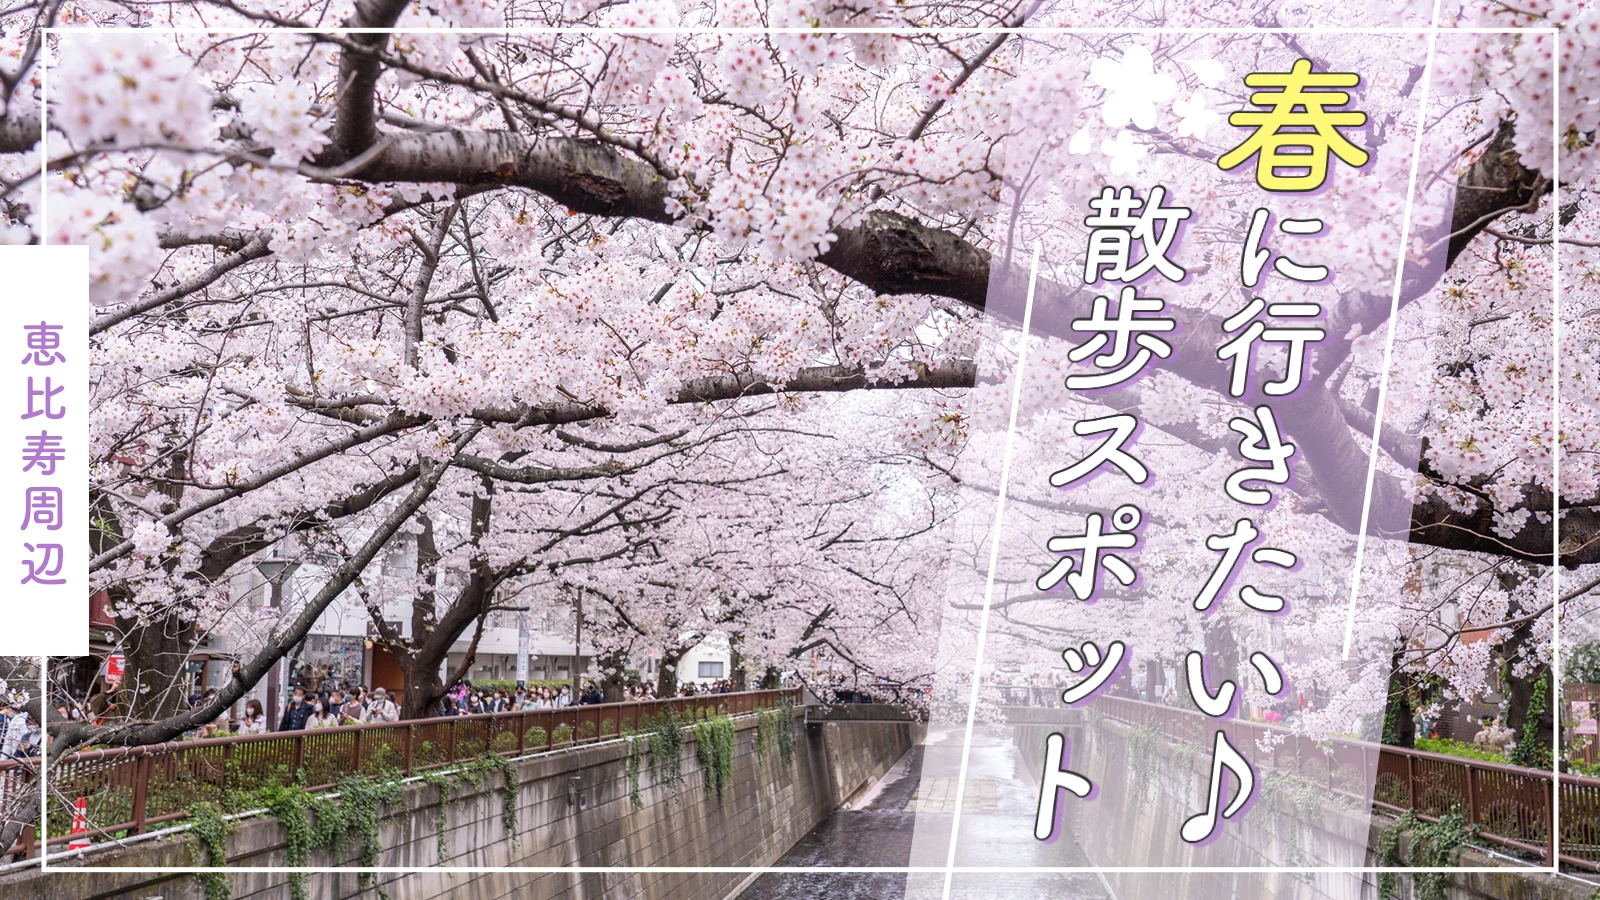 【恵比寿周辺】春はお散歩♪ おでかけスポット5選